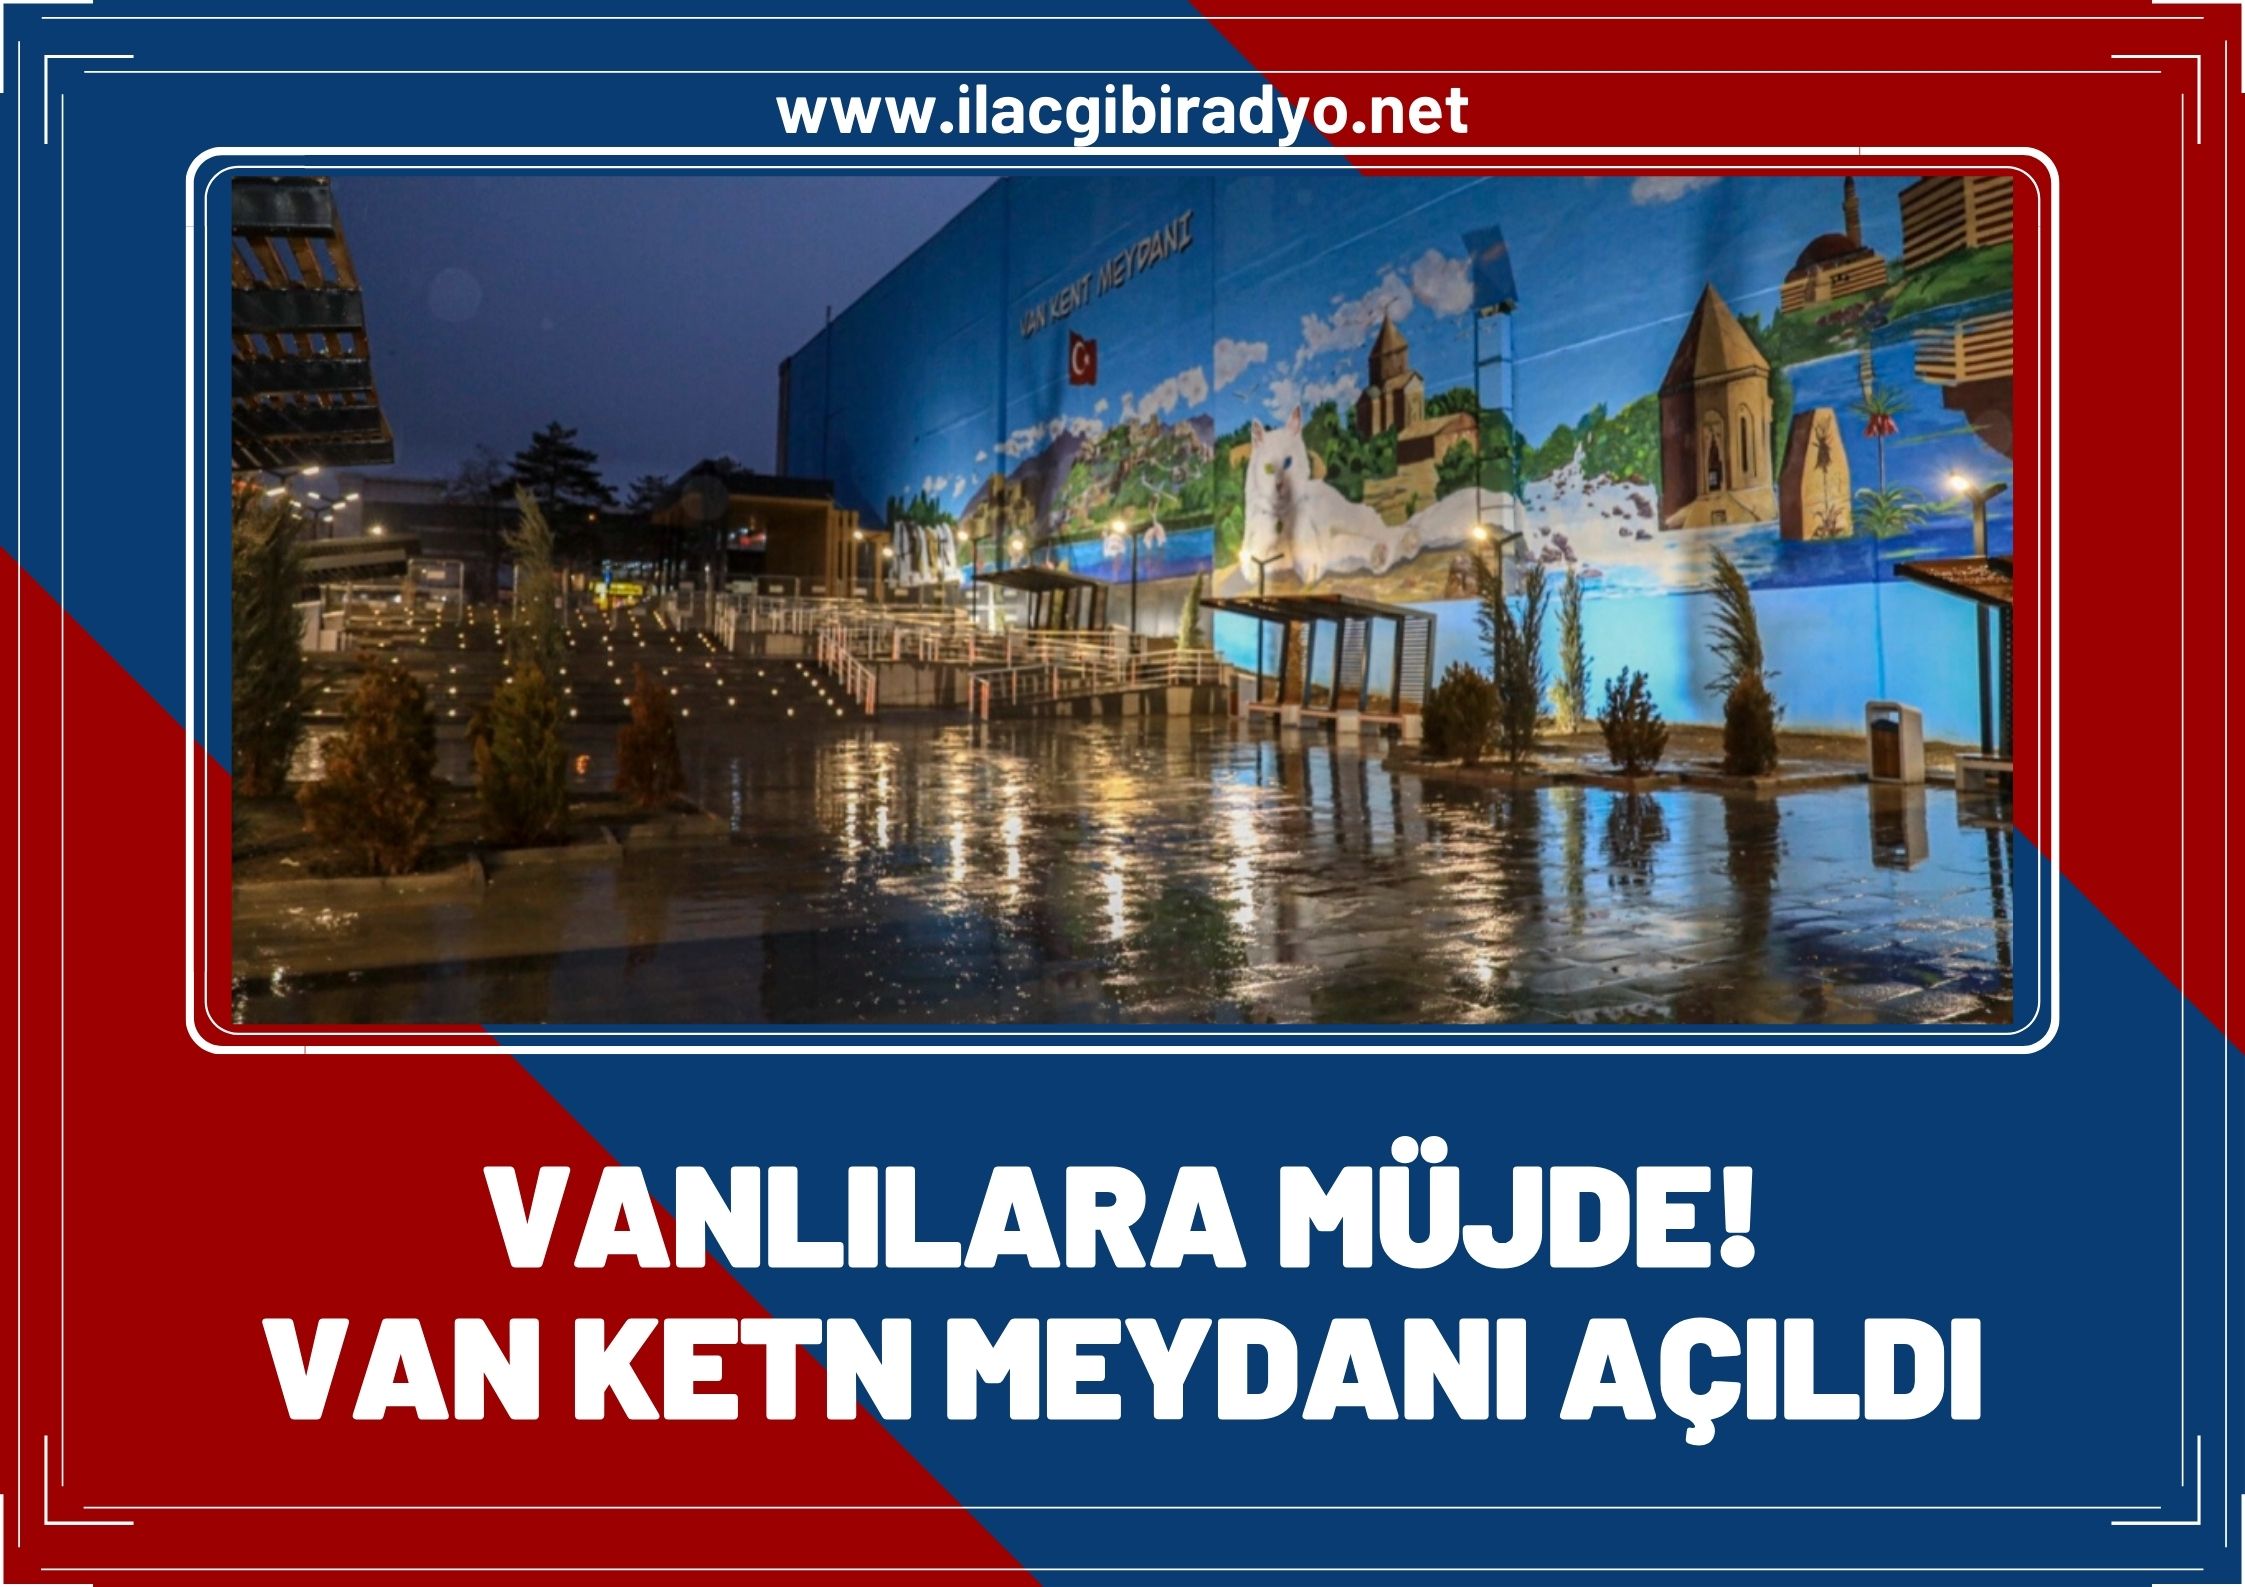 Vanlılara müjde: Van kent meydanı açıldı!